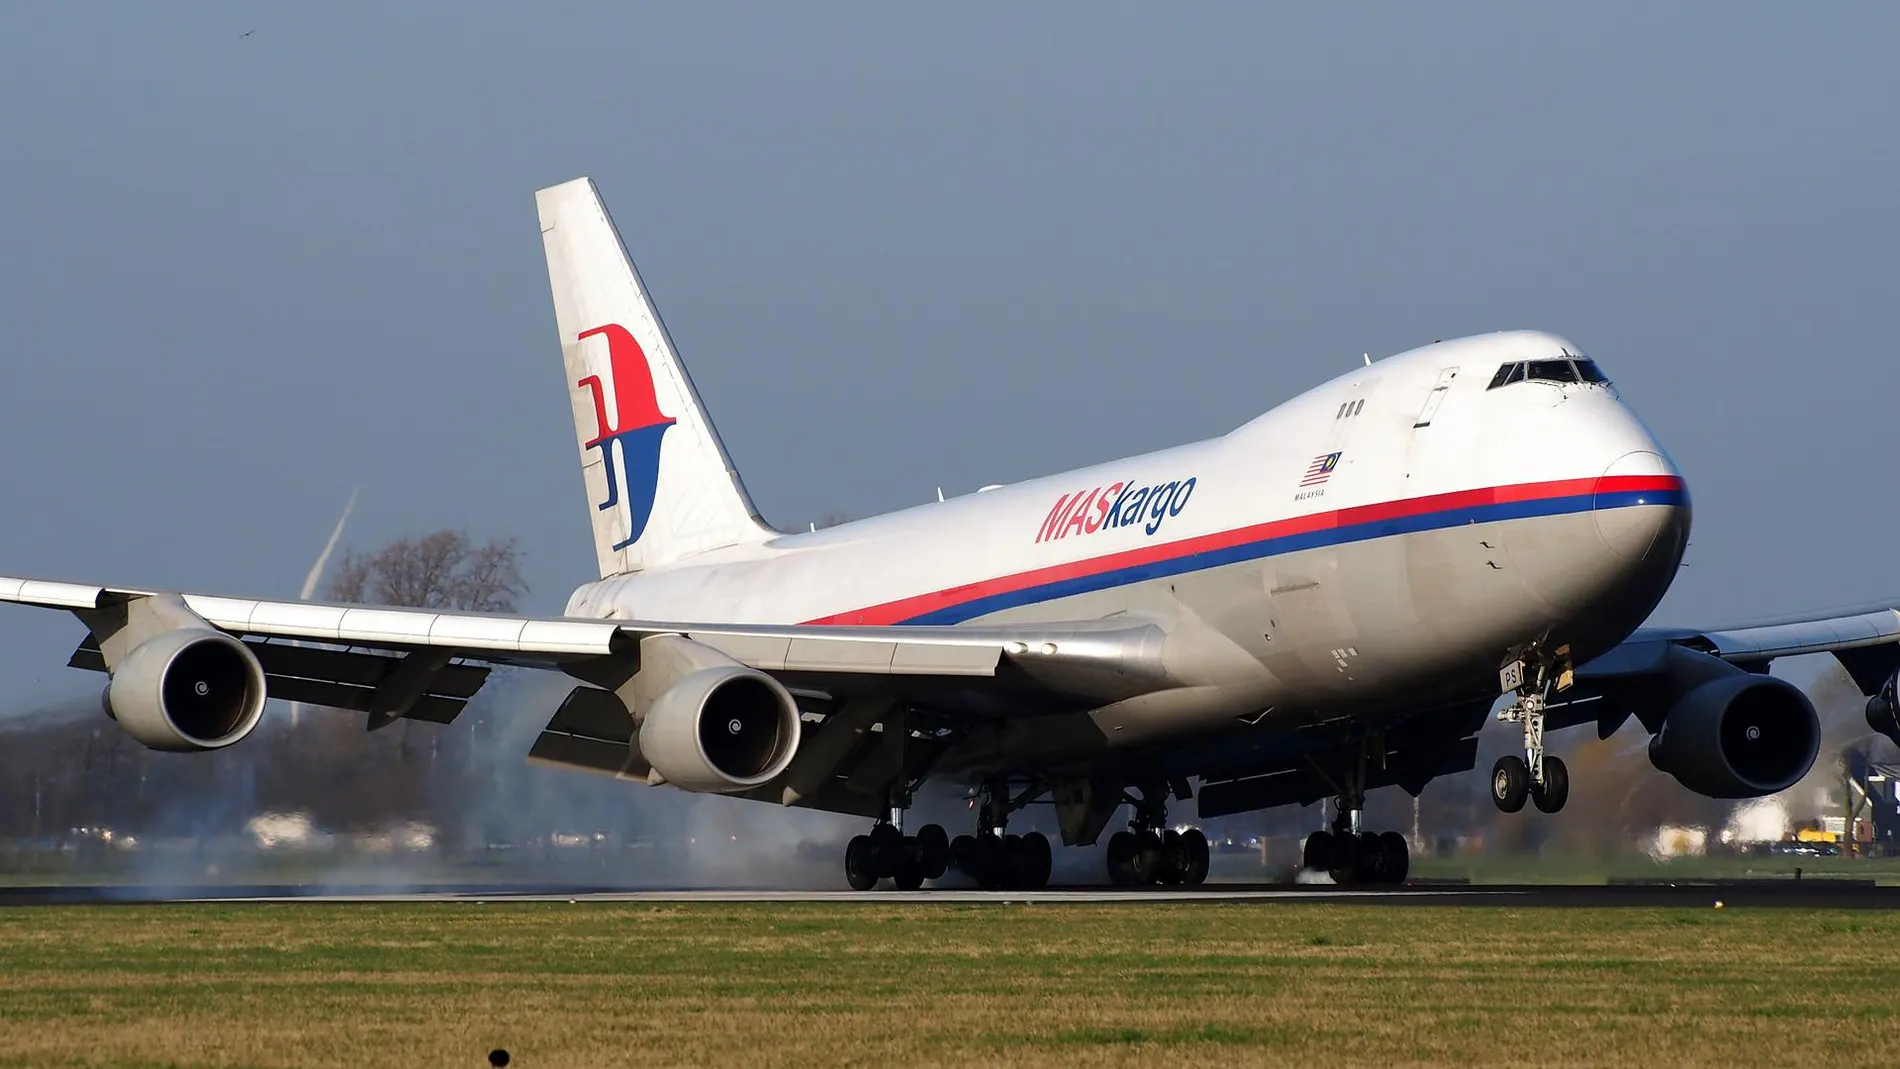 Un avión de Malaysia Airlines, compañía de la aeronave desaparecida en 2014